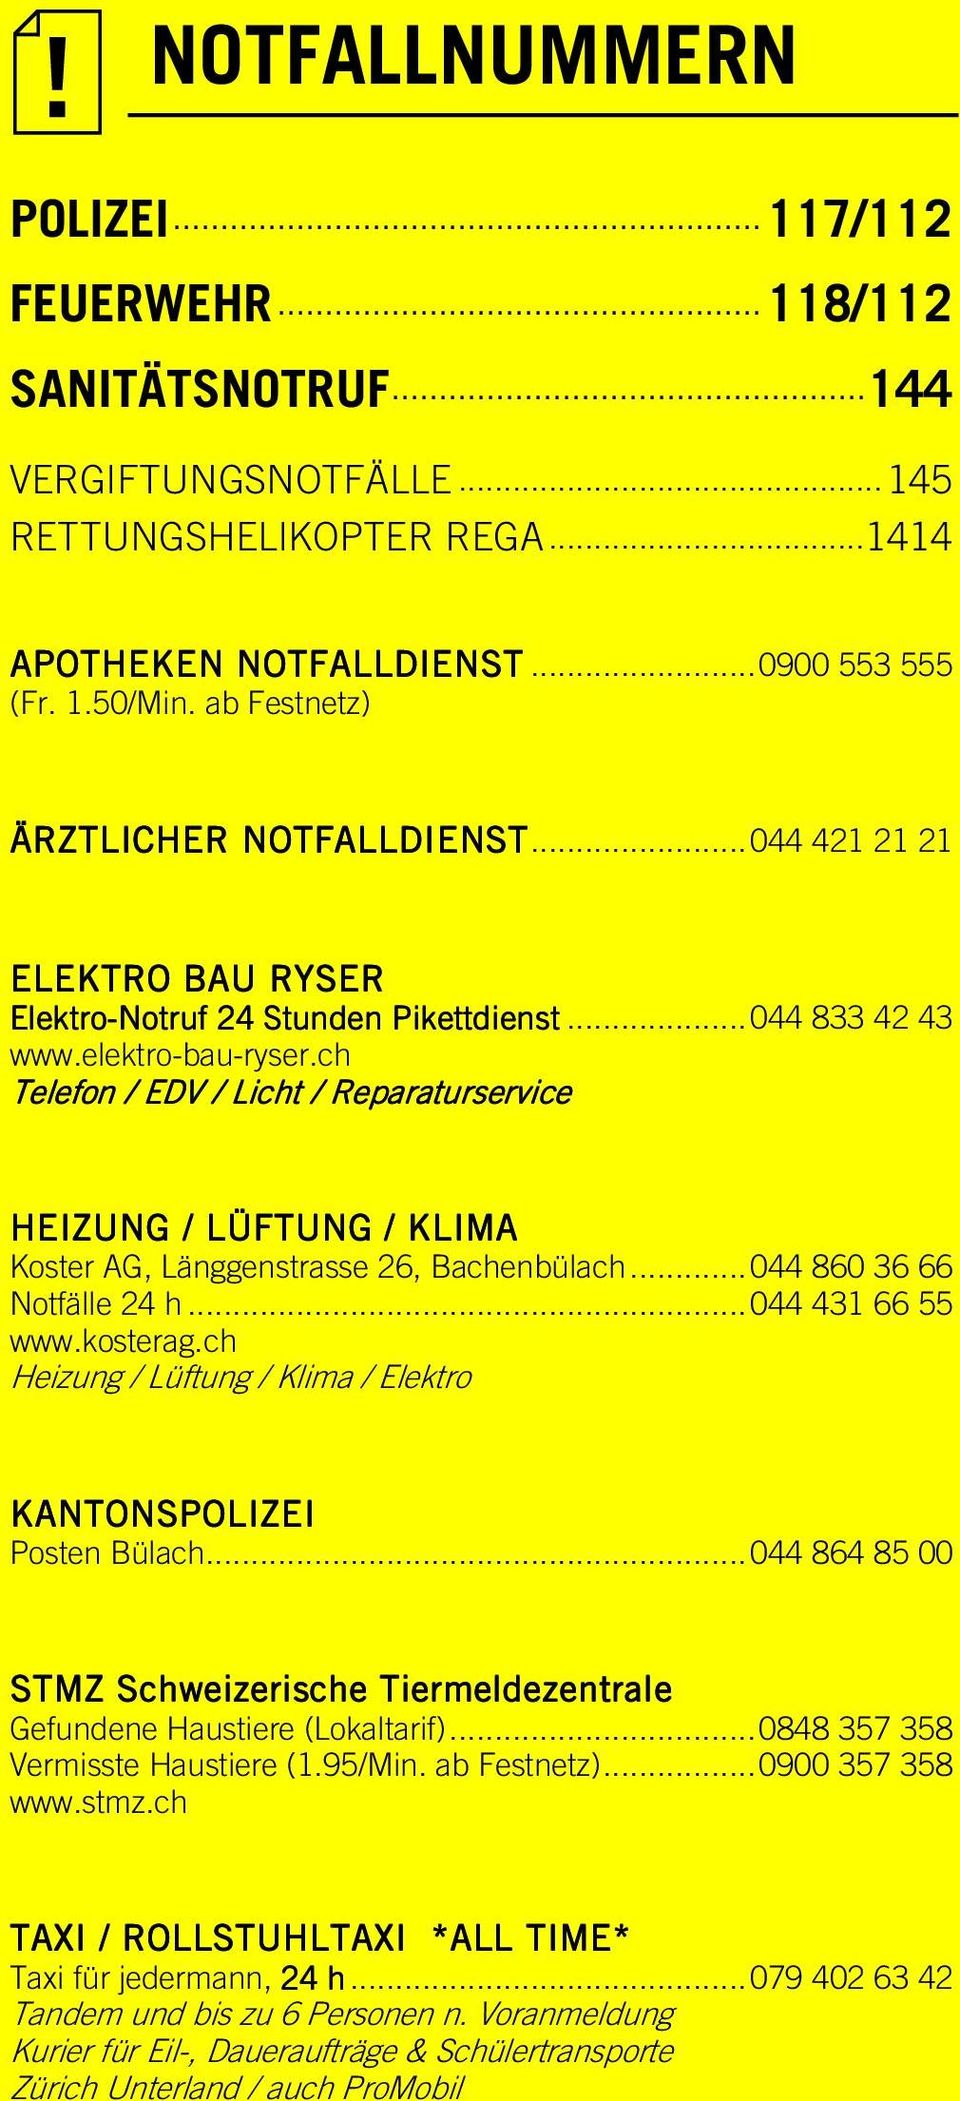 ch Telefon / EDV / Licht / Reparaturservice HEIZUNG / LÜFTUNG / KLIMA Koster AG, Länggenstrasse 26, Bachenbülach... 044 860 36 66 Notfälle 24 h... 044 431 66 55 www.kosterag.